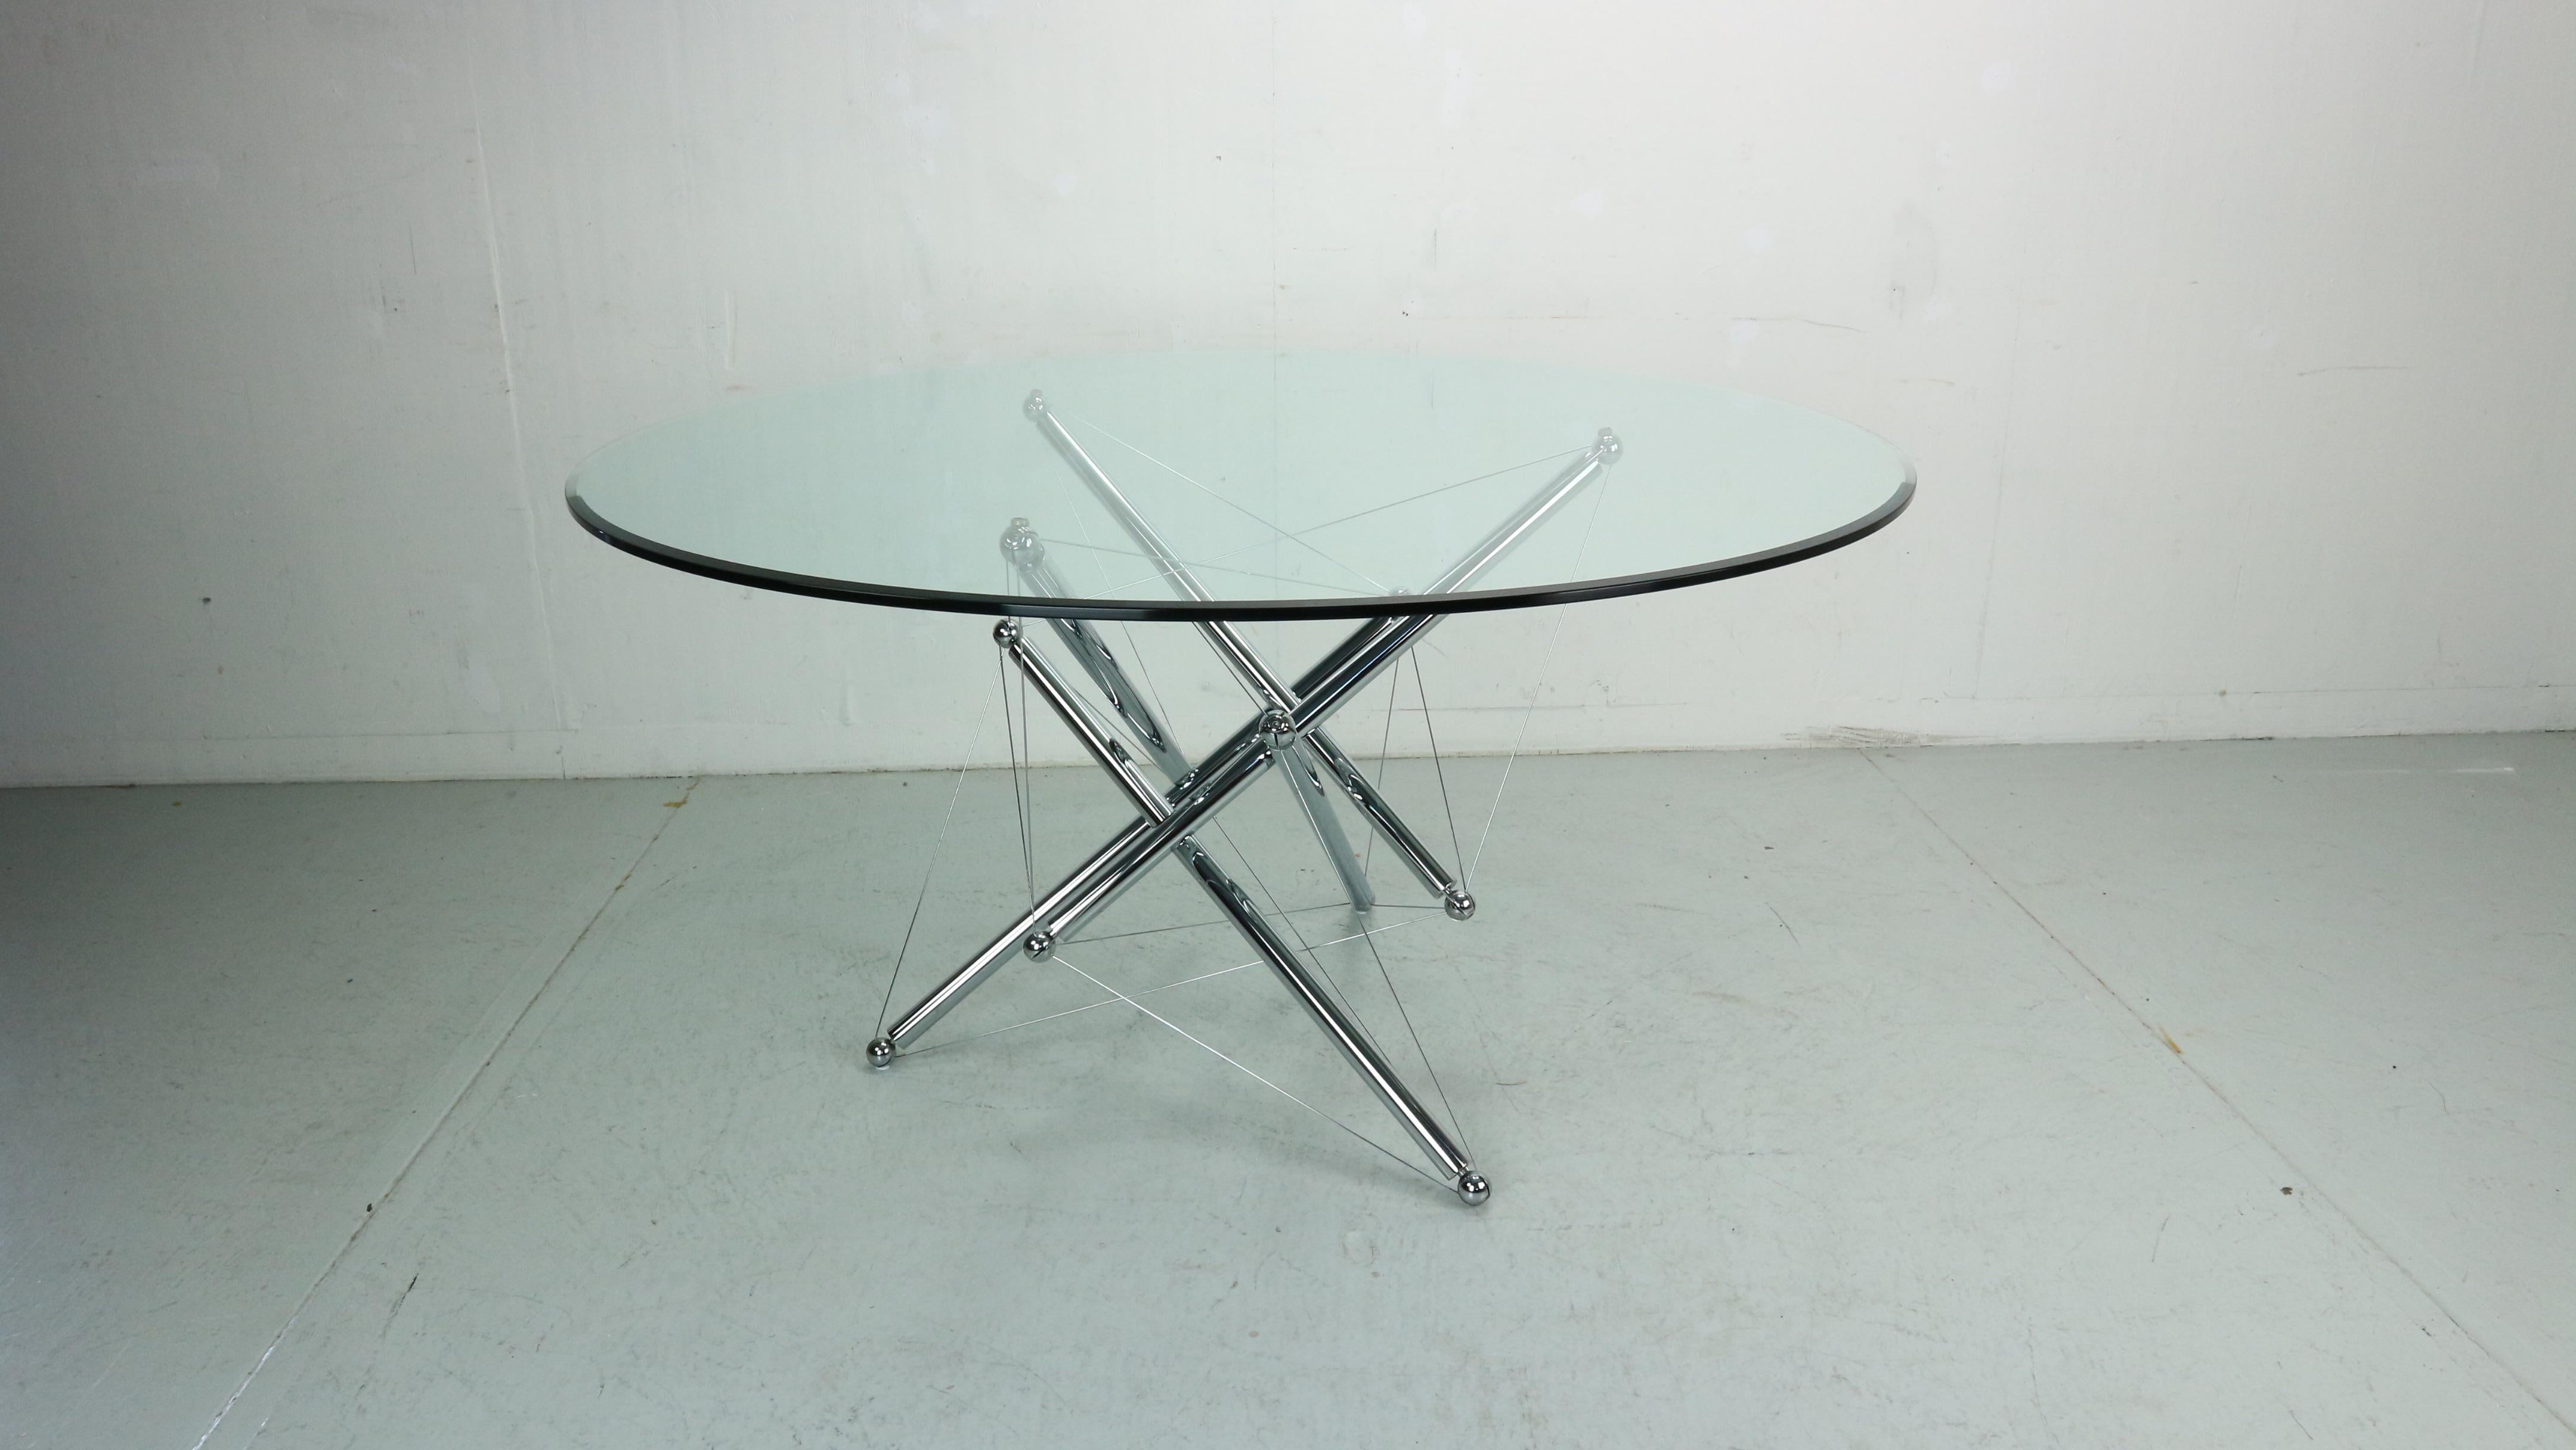 Table de salle à manger 714 sculpturale et originale, produite par Cassina. Cette table a été conçue par Theodore Waddell et a été créée après avoir été inspirée par les structures de tension et de tenségrité de Buckminster Fuller. La base utilise